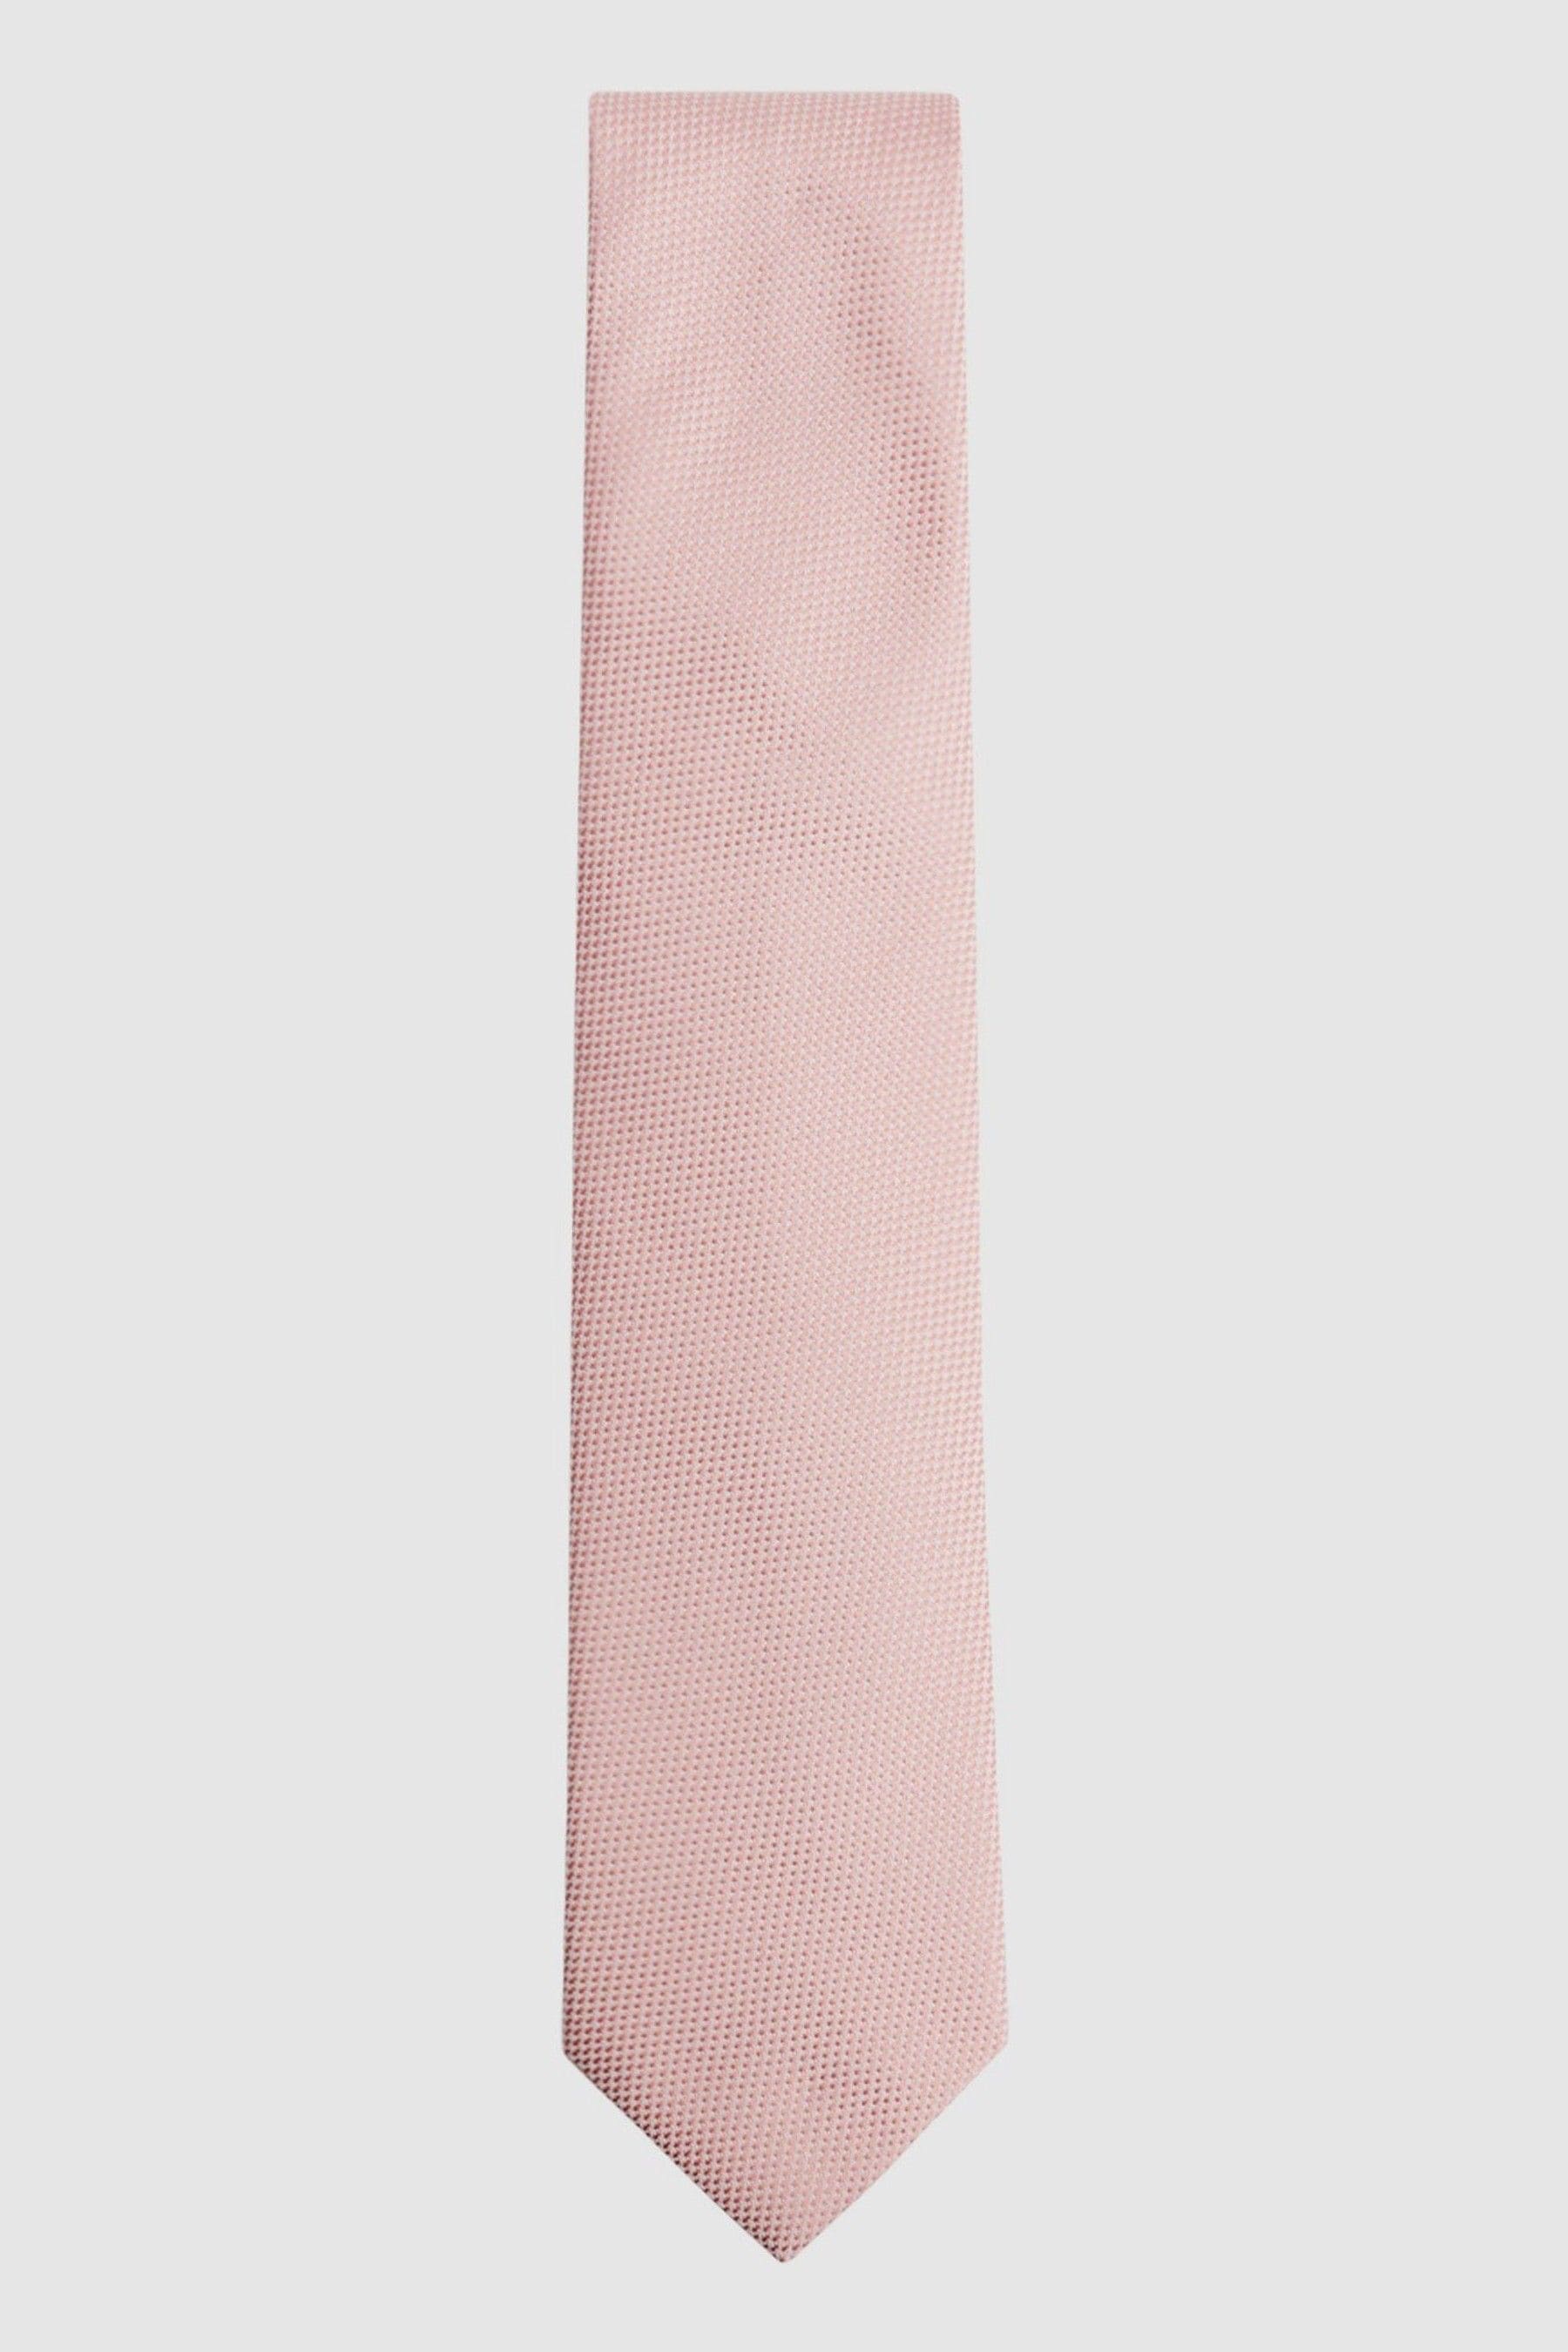 Reiss Ceremony - Soft Pink Textured Silk Tie,